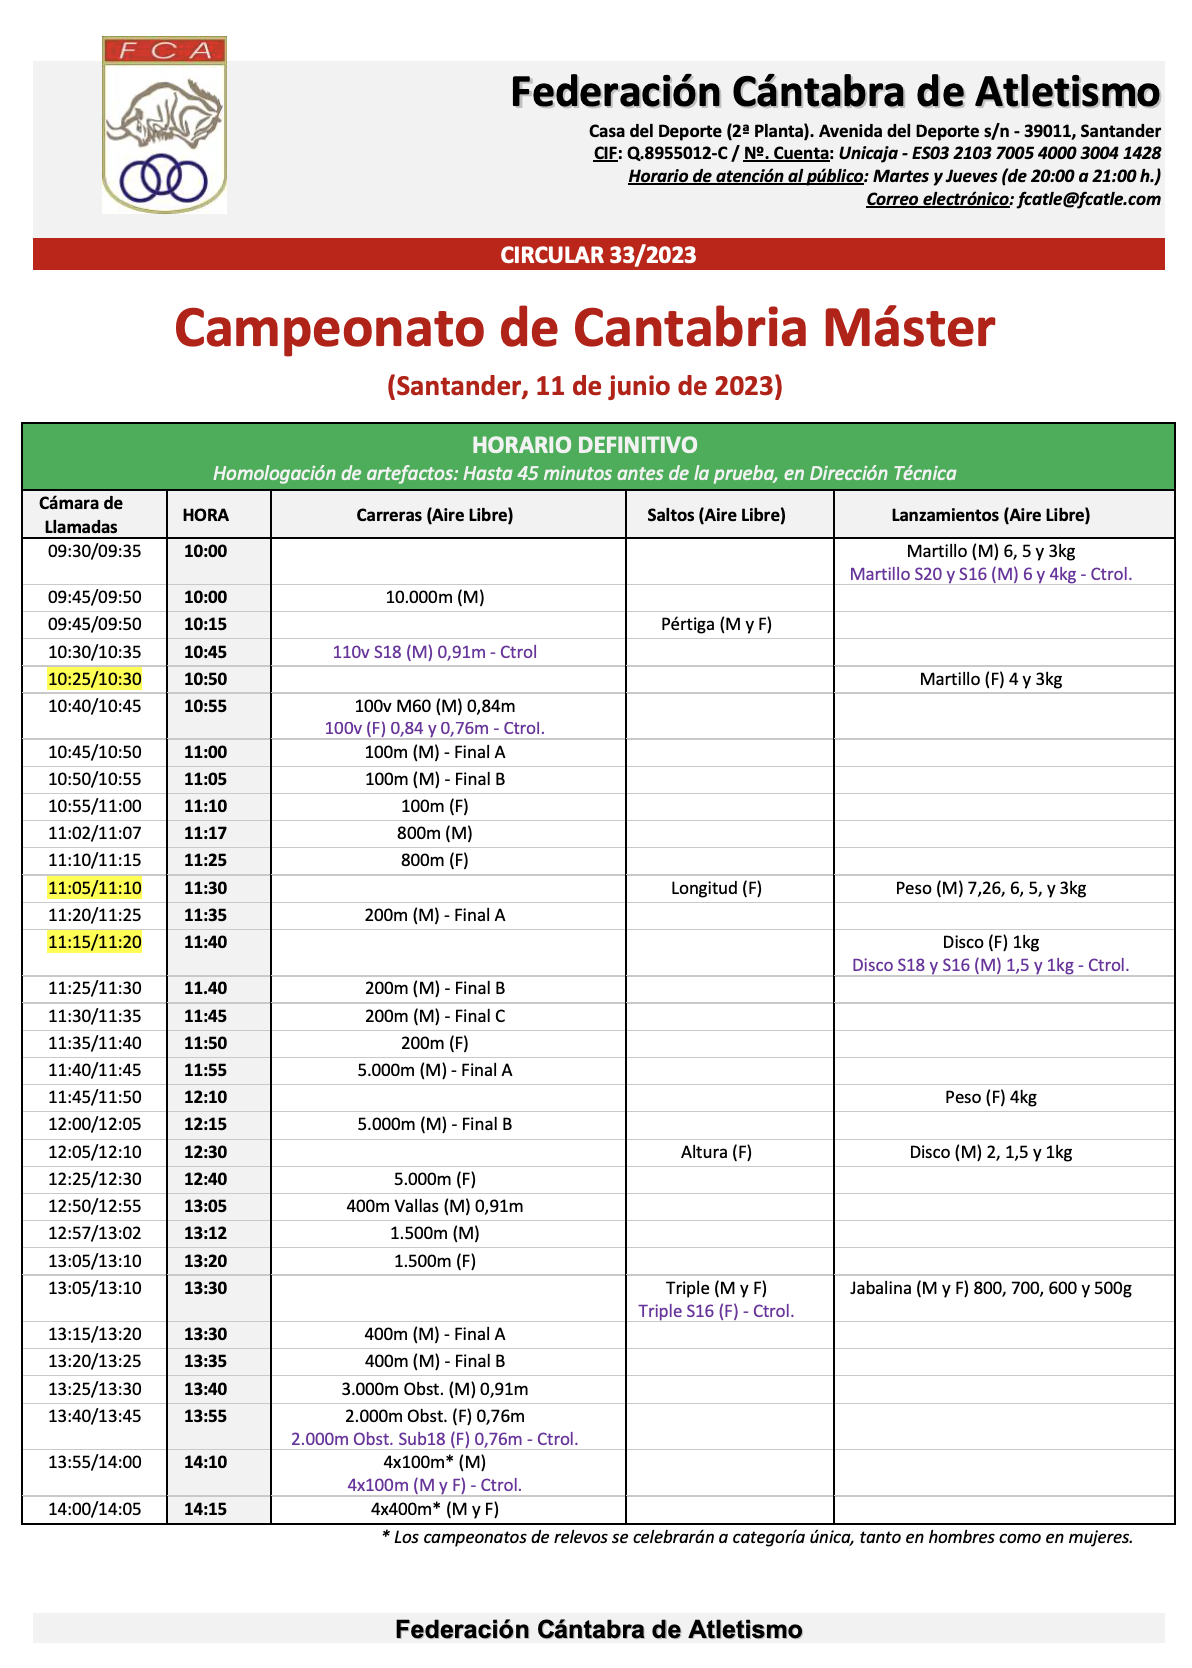 Campeonato de Cantabria Máster @ Santander, Cantabria